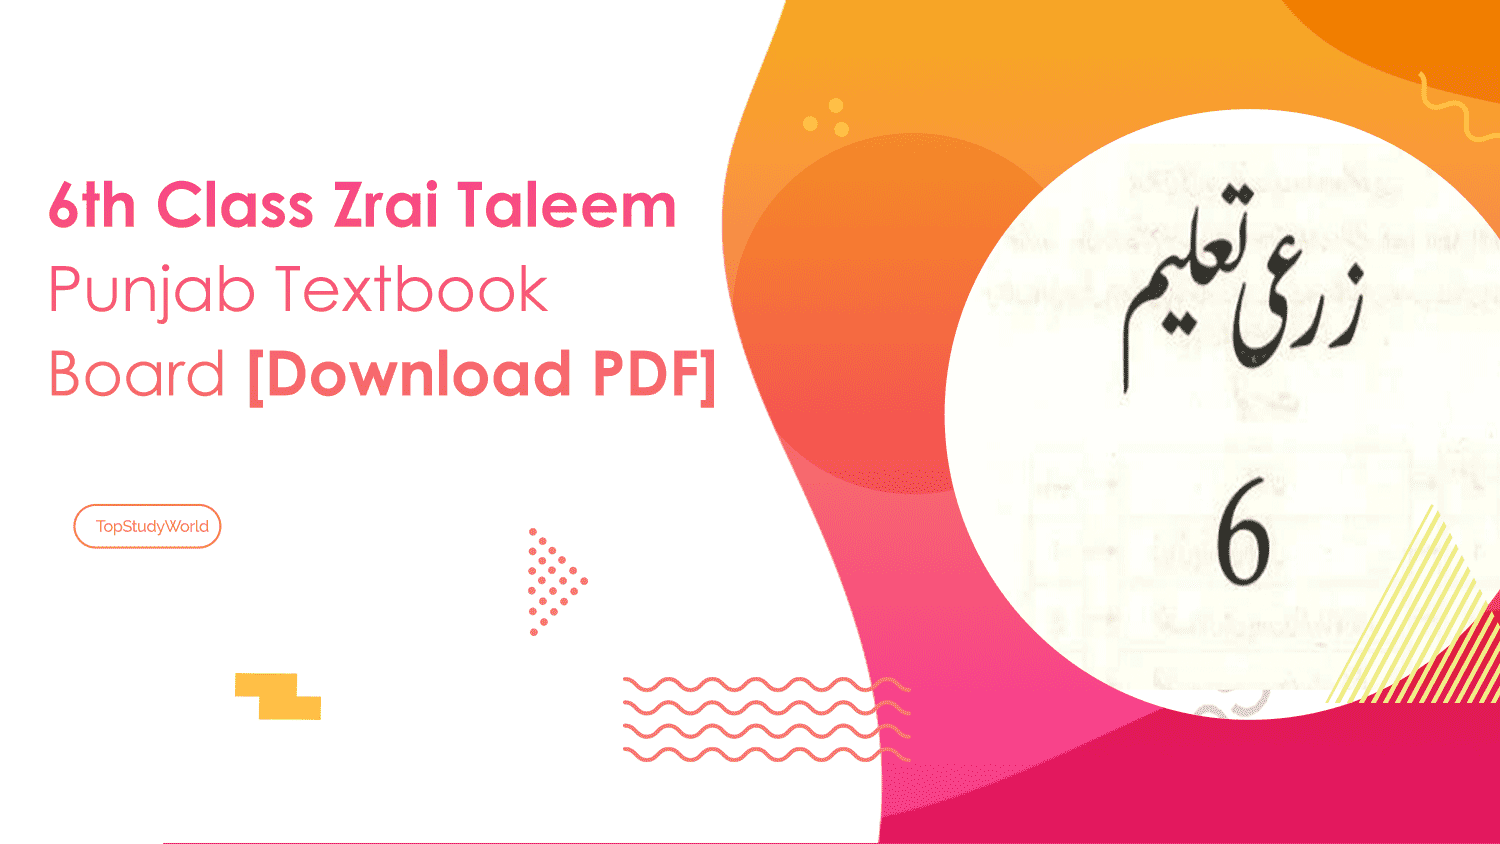 6th Class Zrai Taleem Punjab Textbook Board [Download PDF]